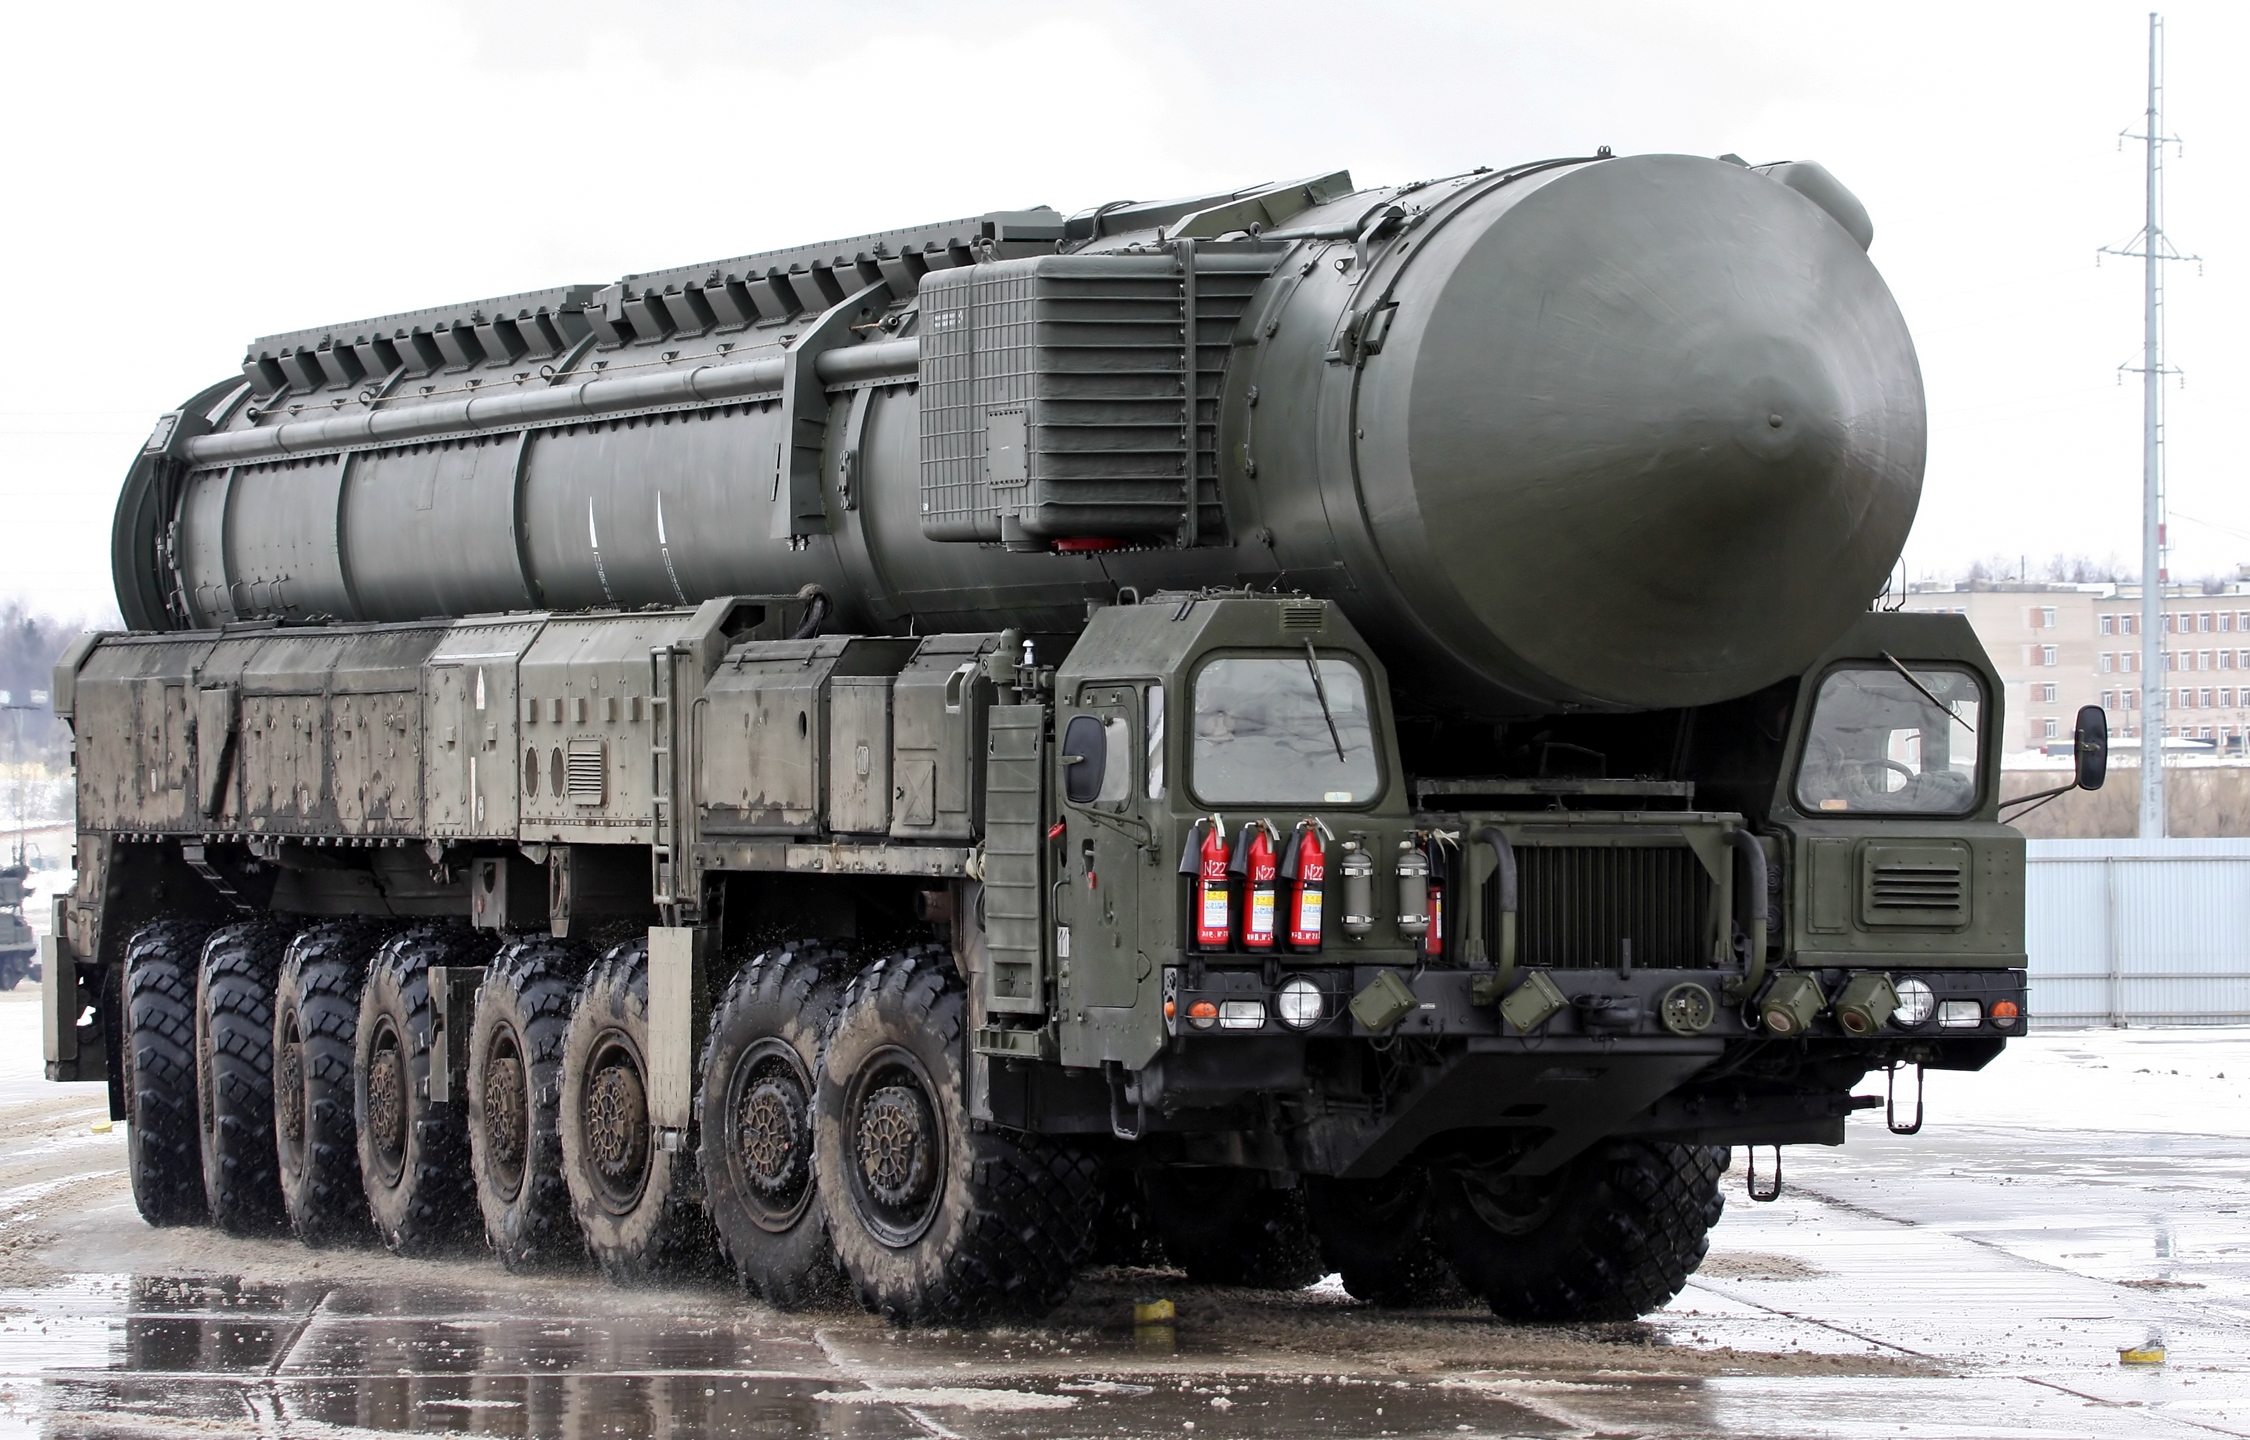 Τον πρώτο της πύραυλο με διηπειρωτική εμβέλεια εκτόξευσε η Ρωσία – Ανησυχούν οι ΗΠΑ [vid]